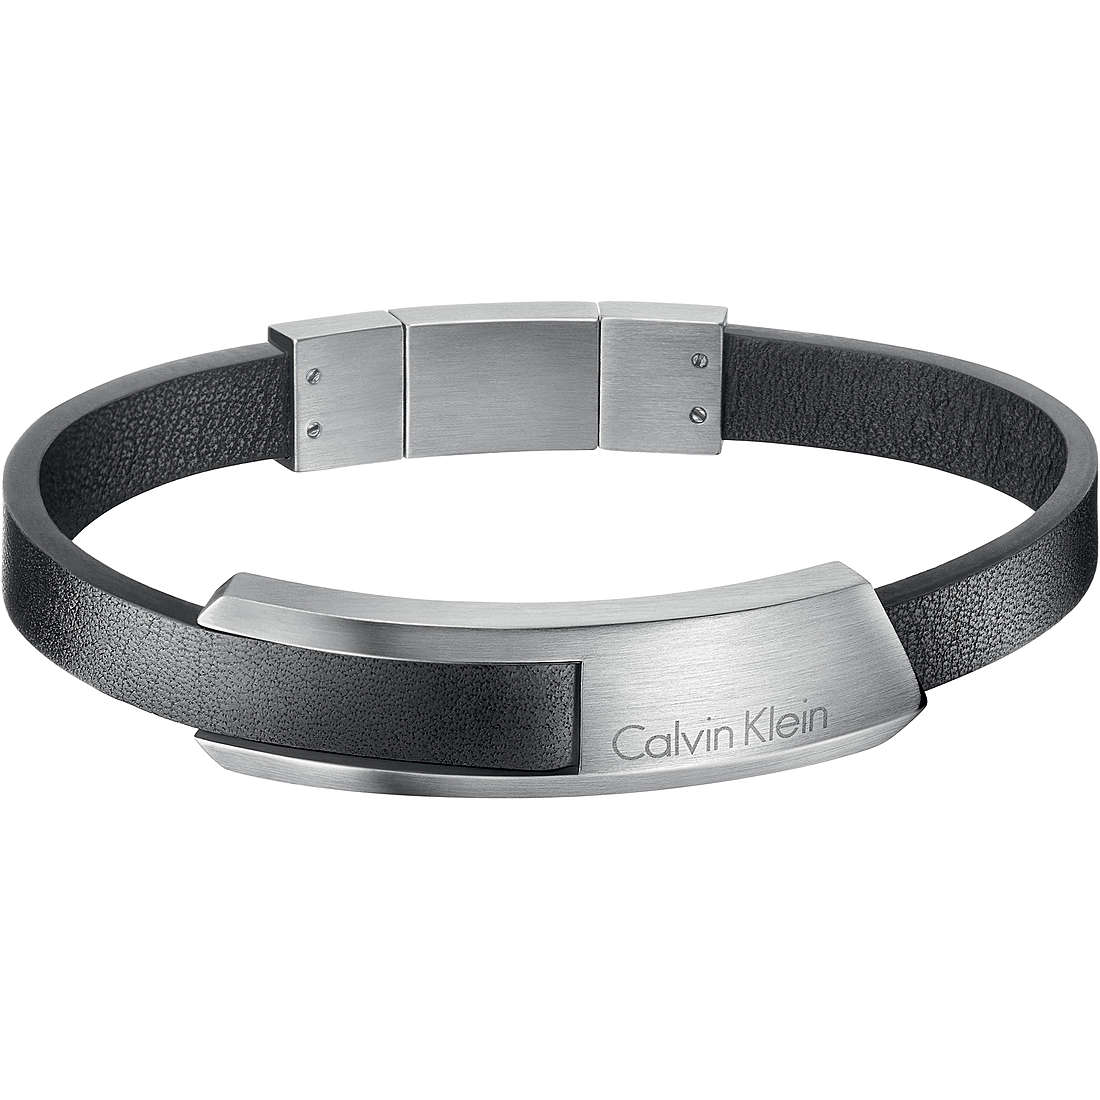 Bracelet Calvin Klein Silver in Steel - 35880642